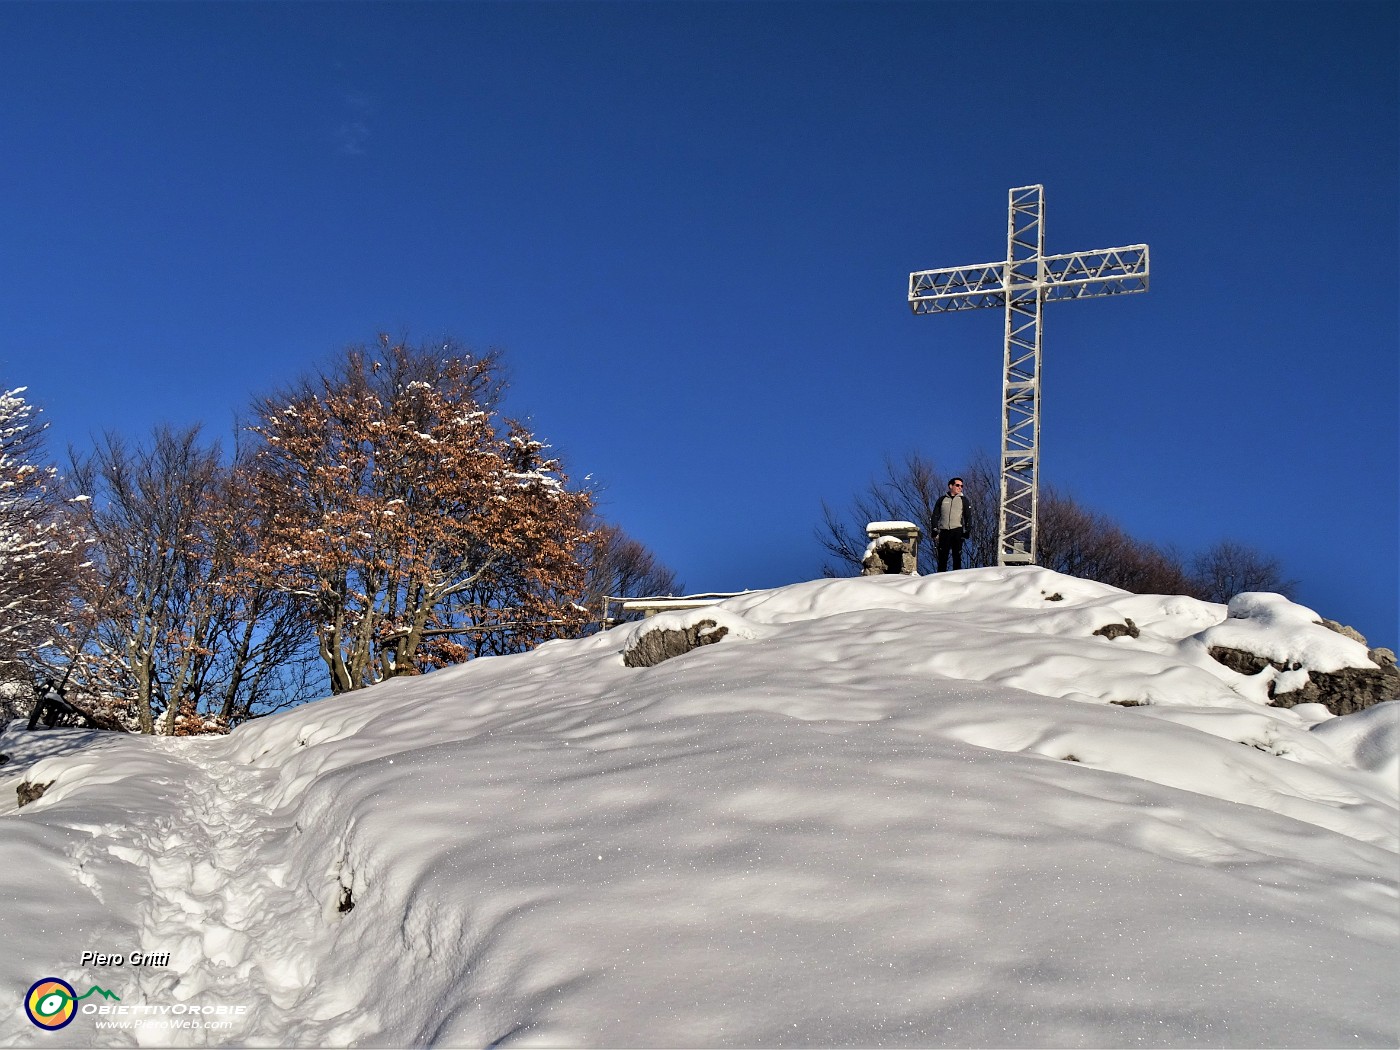 49 E Raffaele in vetta al Suchello (1441 m) per la sua prima volta...ammantato di neve!.JPG